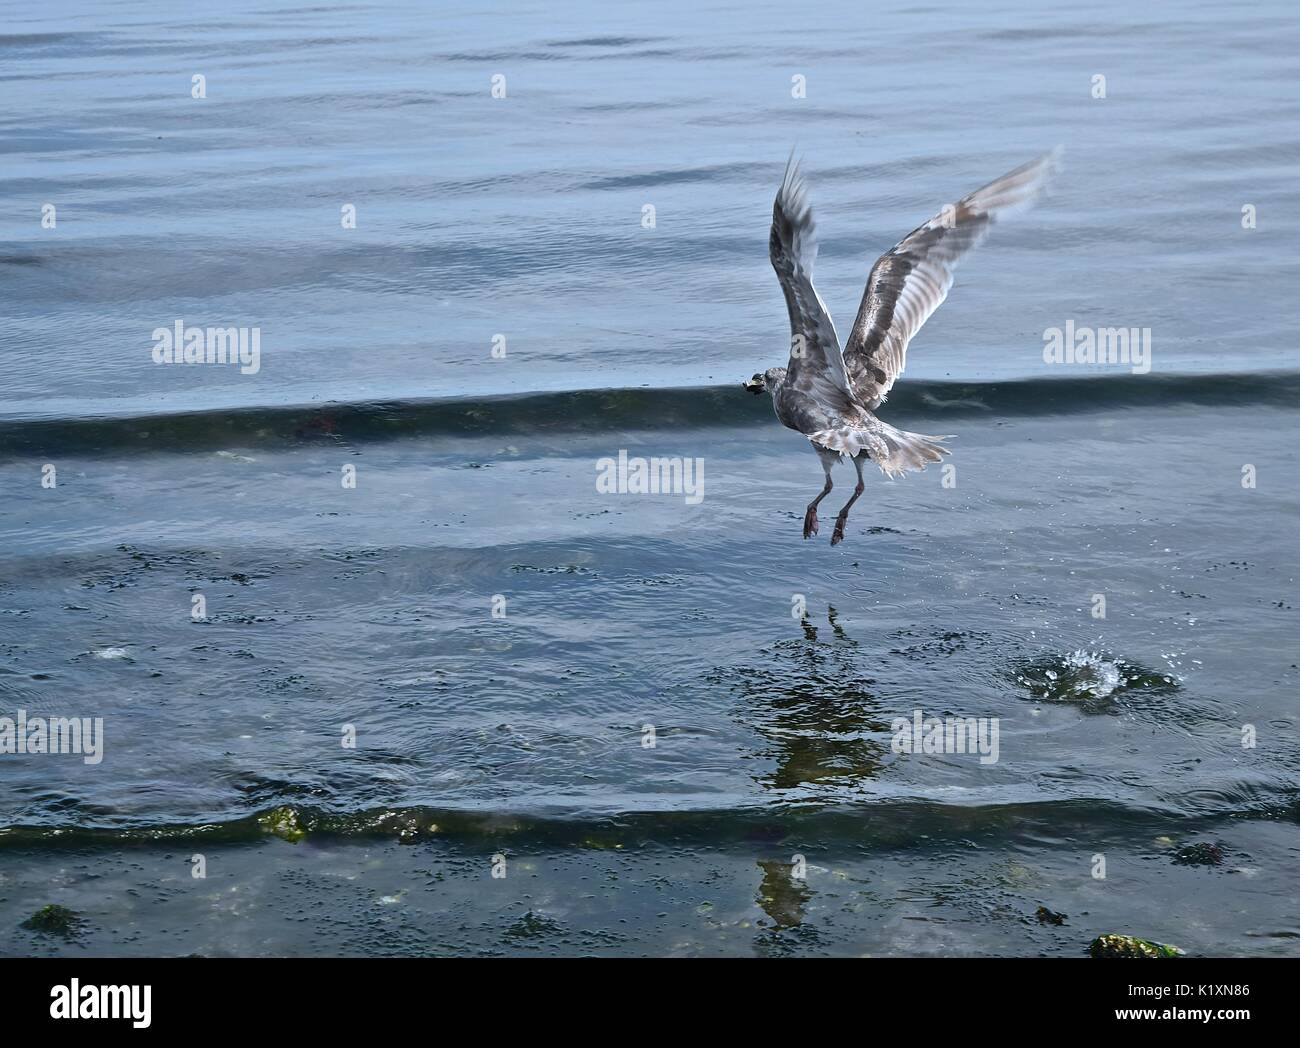 Marea baja en Puget sound revela muchas criaturas del mar haciendo la siguiente comida para una gaviota una alta posibilidad. Foto de stock